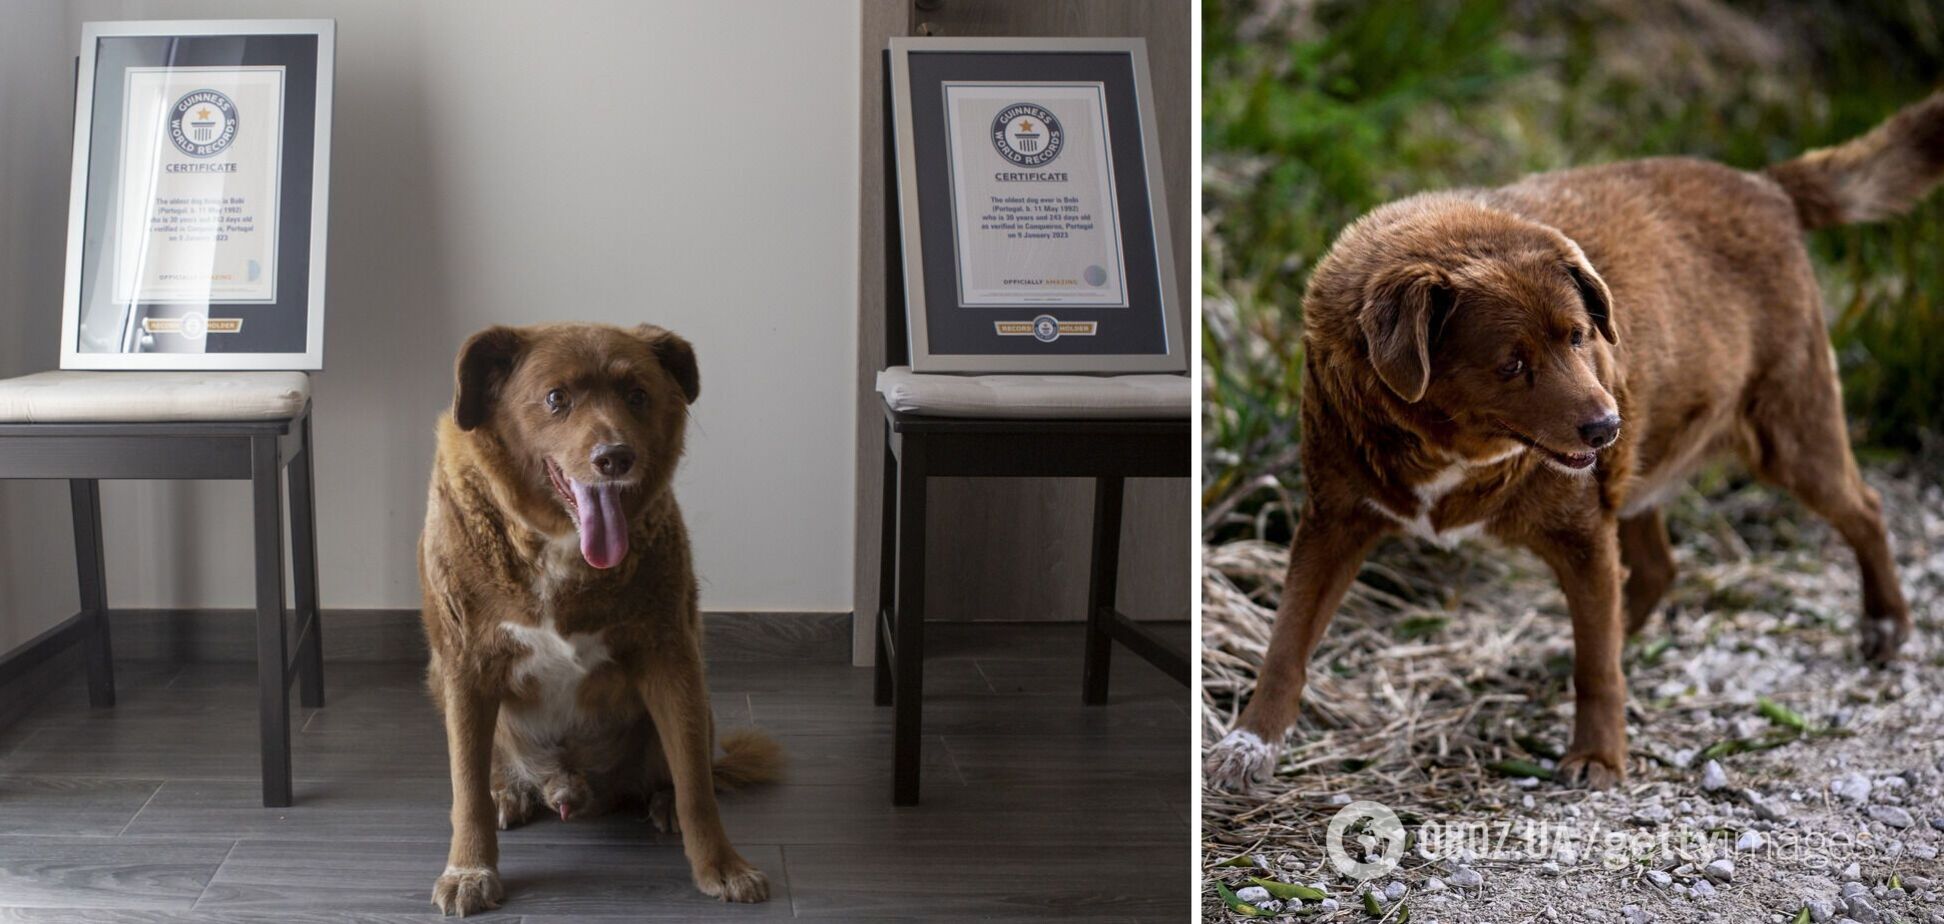 Самую старую собаку в истории лишили титула Книги рекордов Гиннеса после проверки доказательств